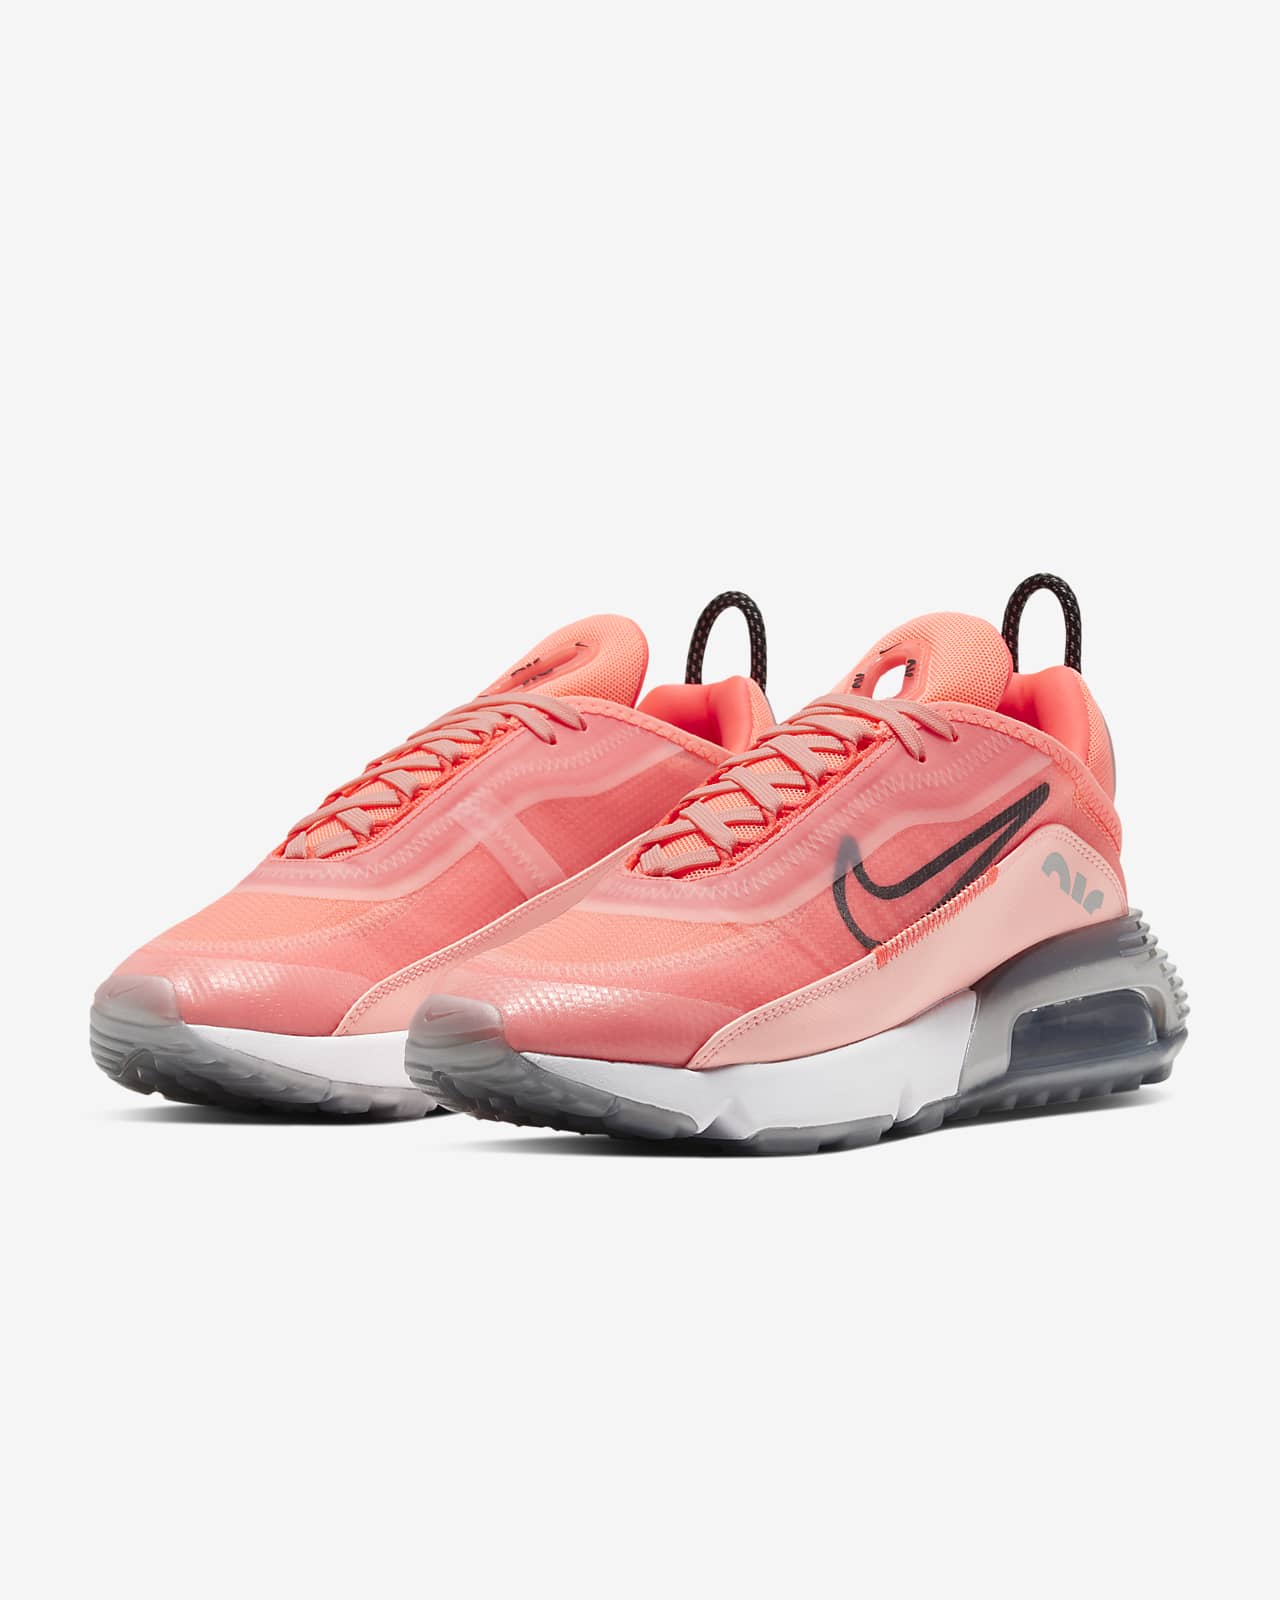 nike women's shoes neon pink